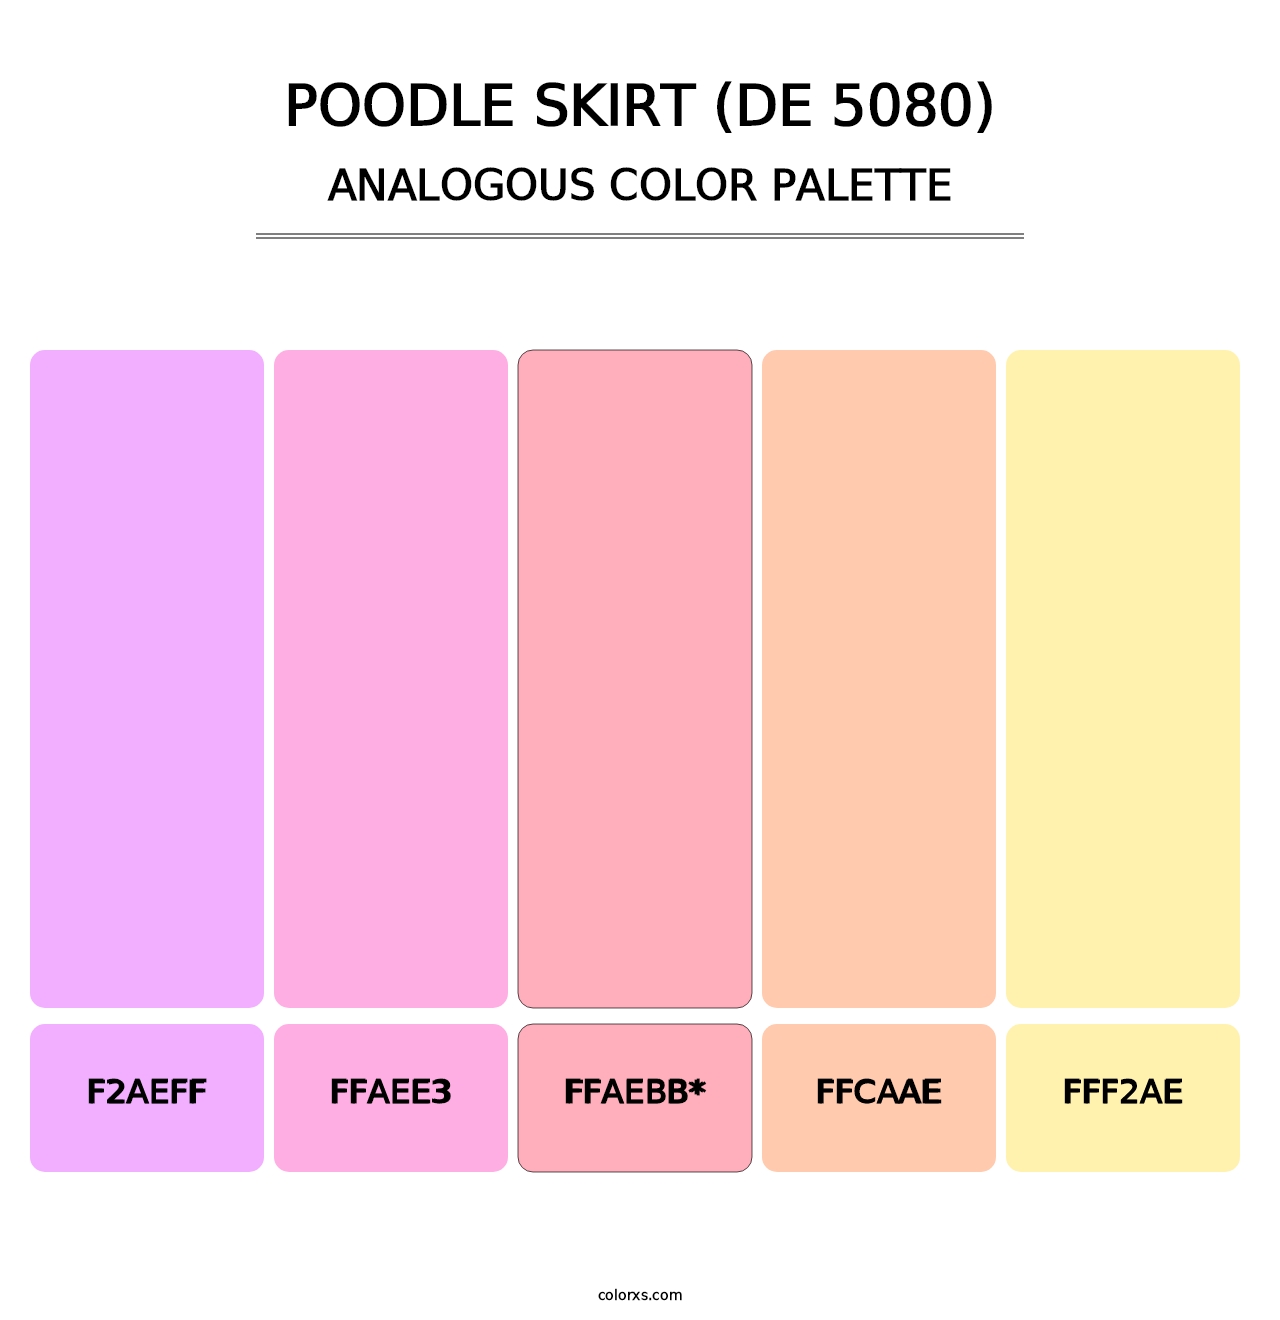 Poodle Skirt (DE 5080) - Analogous Color Palette